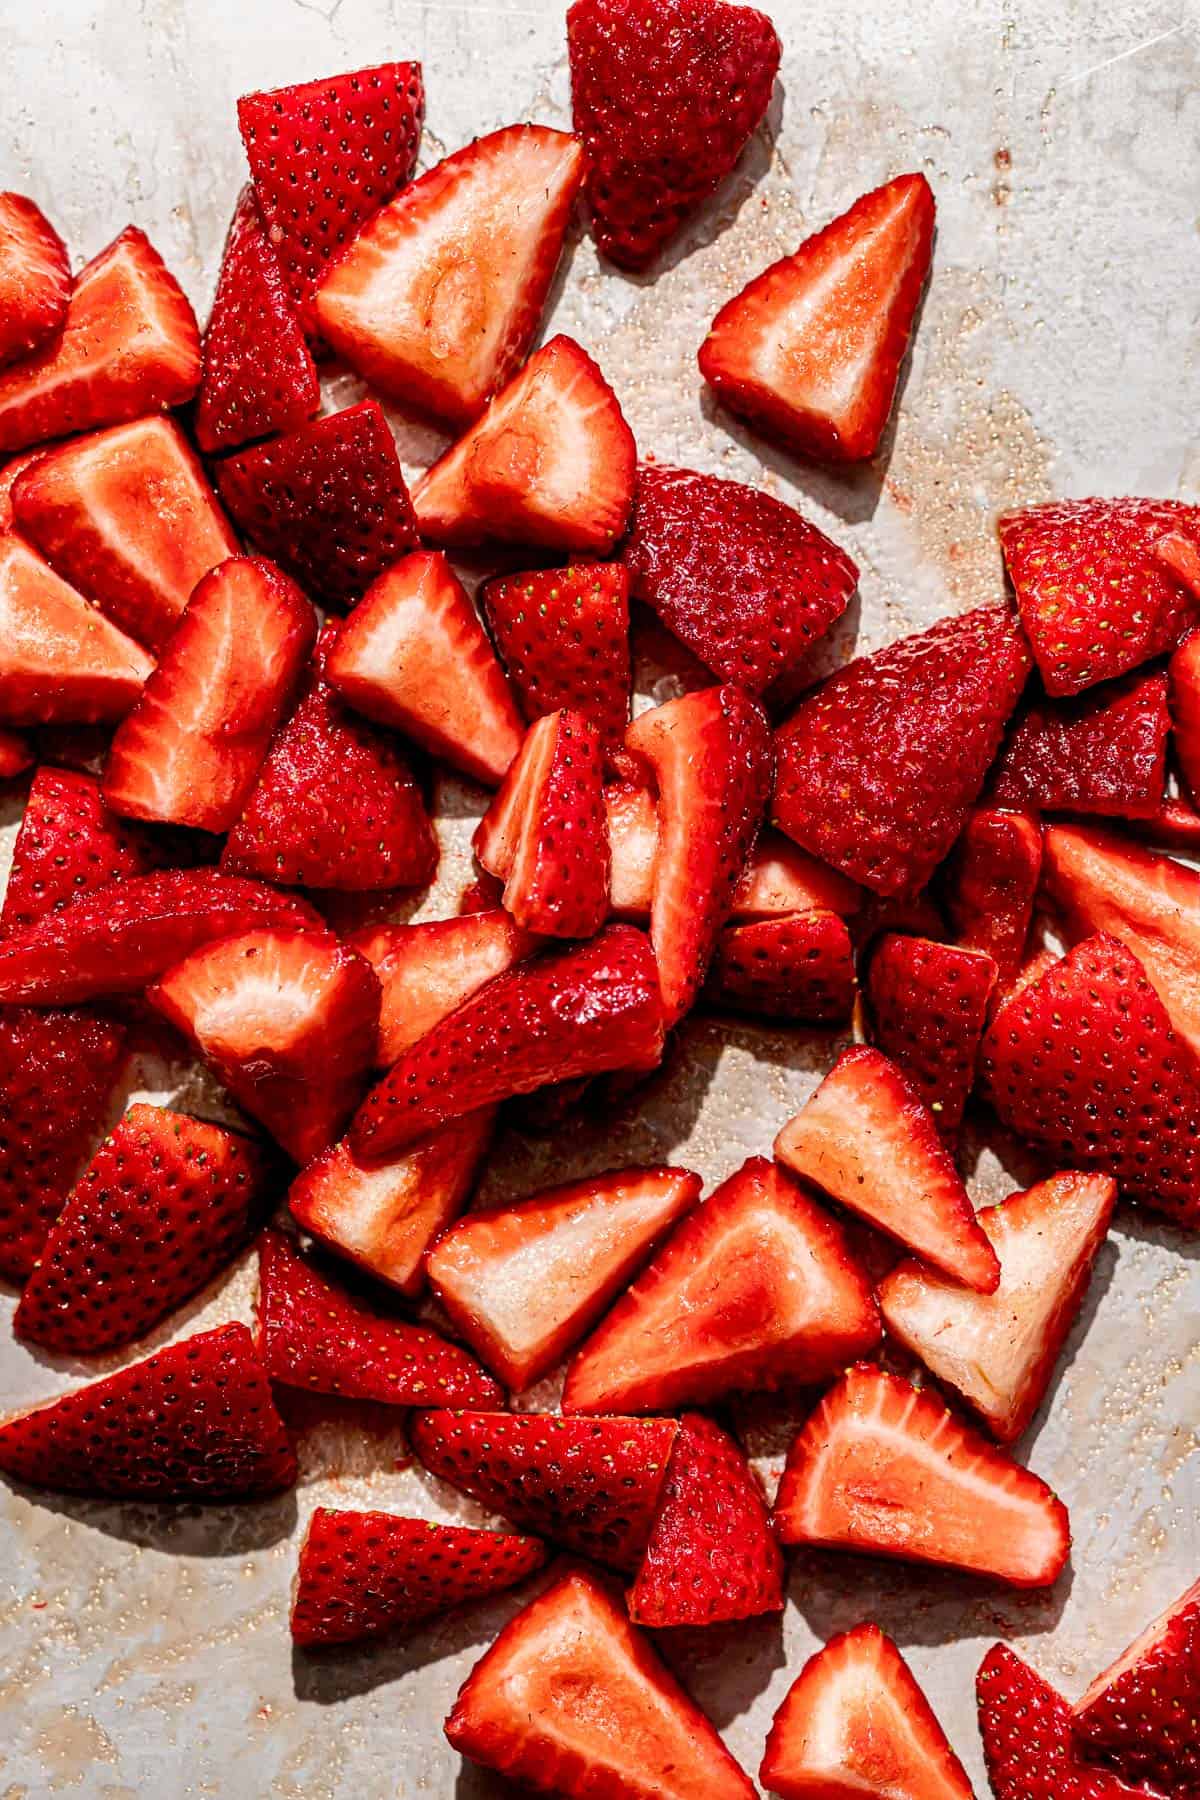 strawberries on baking sheet.